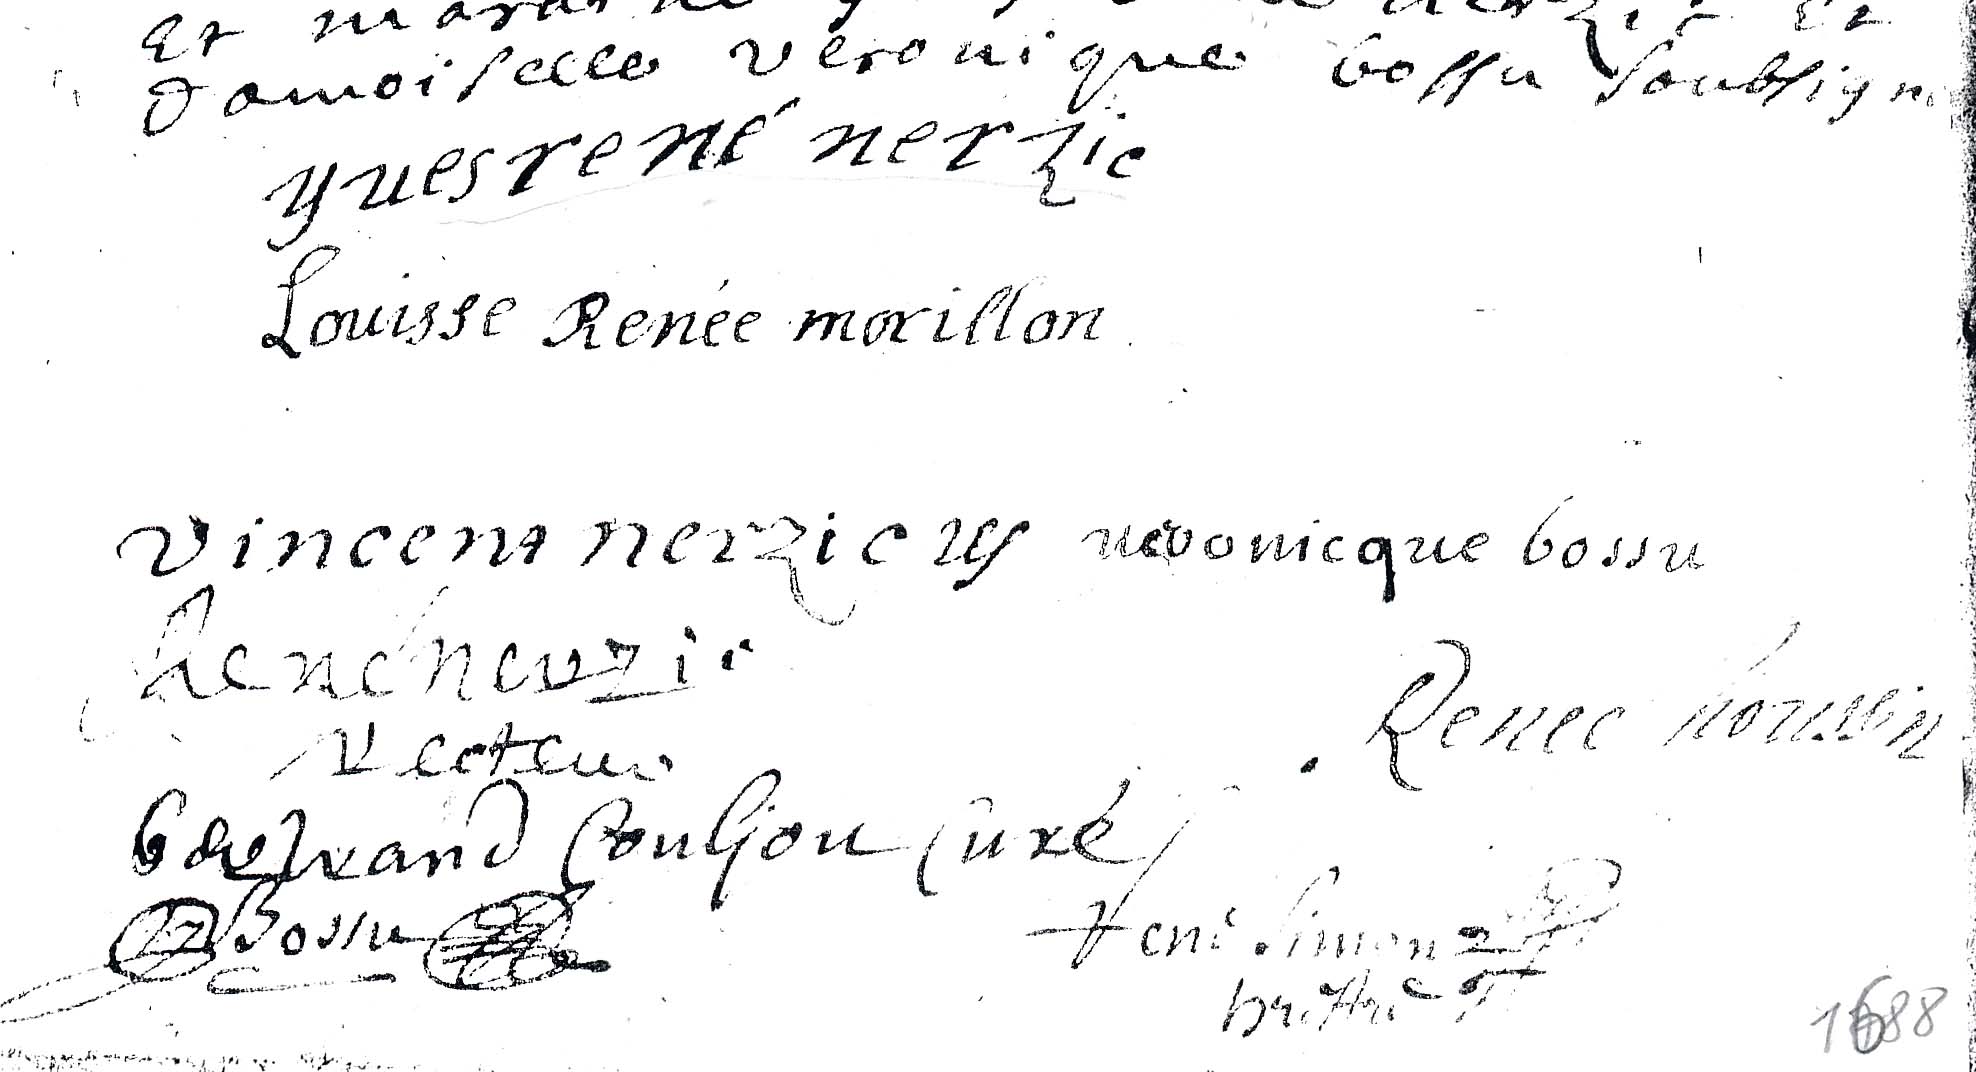 Signatures de Vincent Nerzic et Louise Renée Morillon